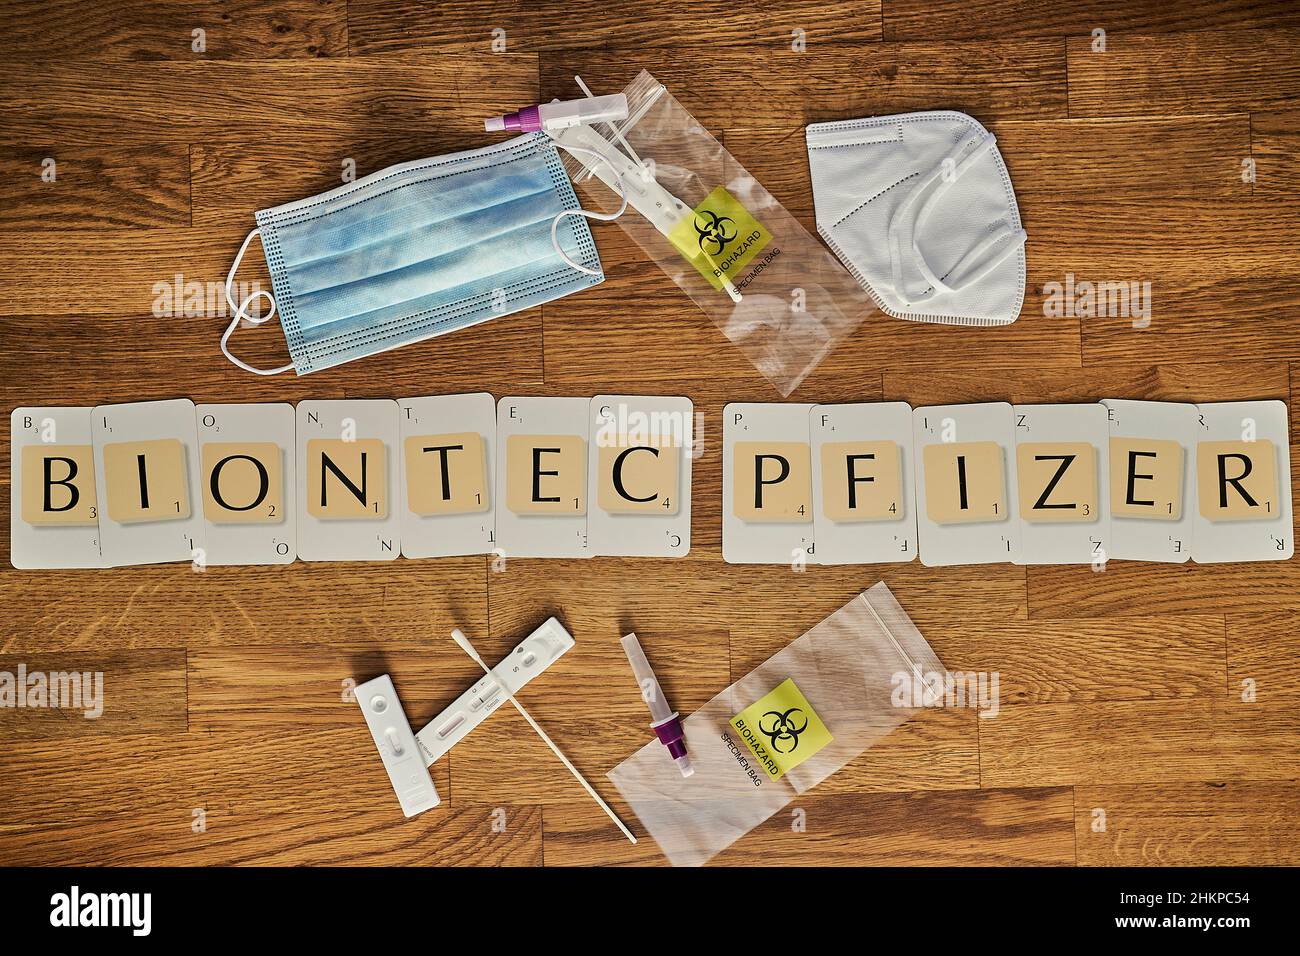 Cartas de Scrabble deletreando la corona covid 19 Palabras relacionadas con la pandemia Biontec Pfizer Foto de stock